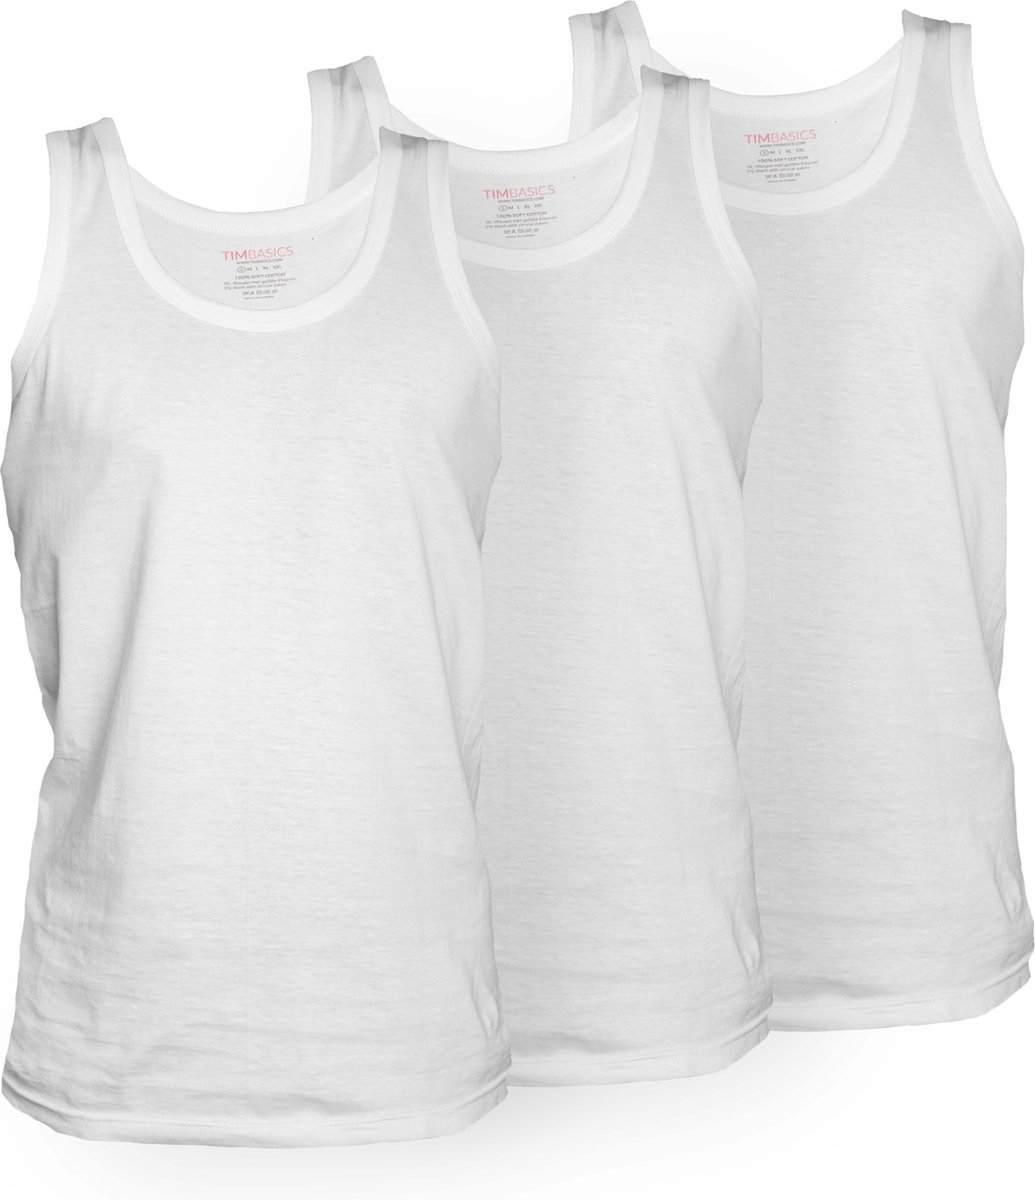 TimBasics - 100% Katoen - Heren Onderhemd - 3-Pack - Wit - S